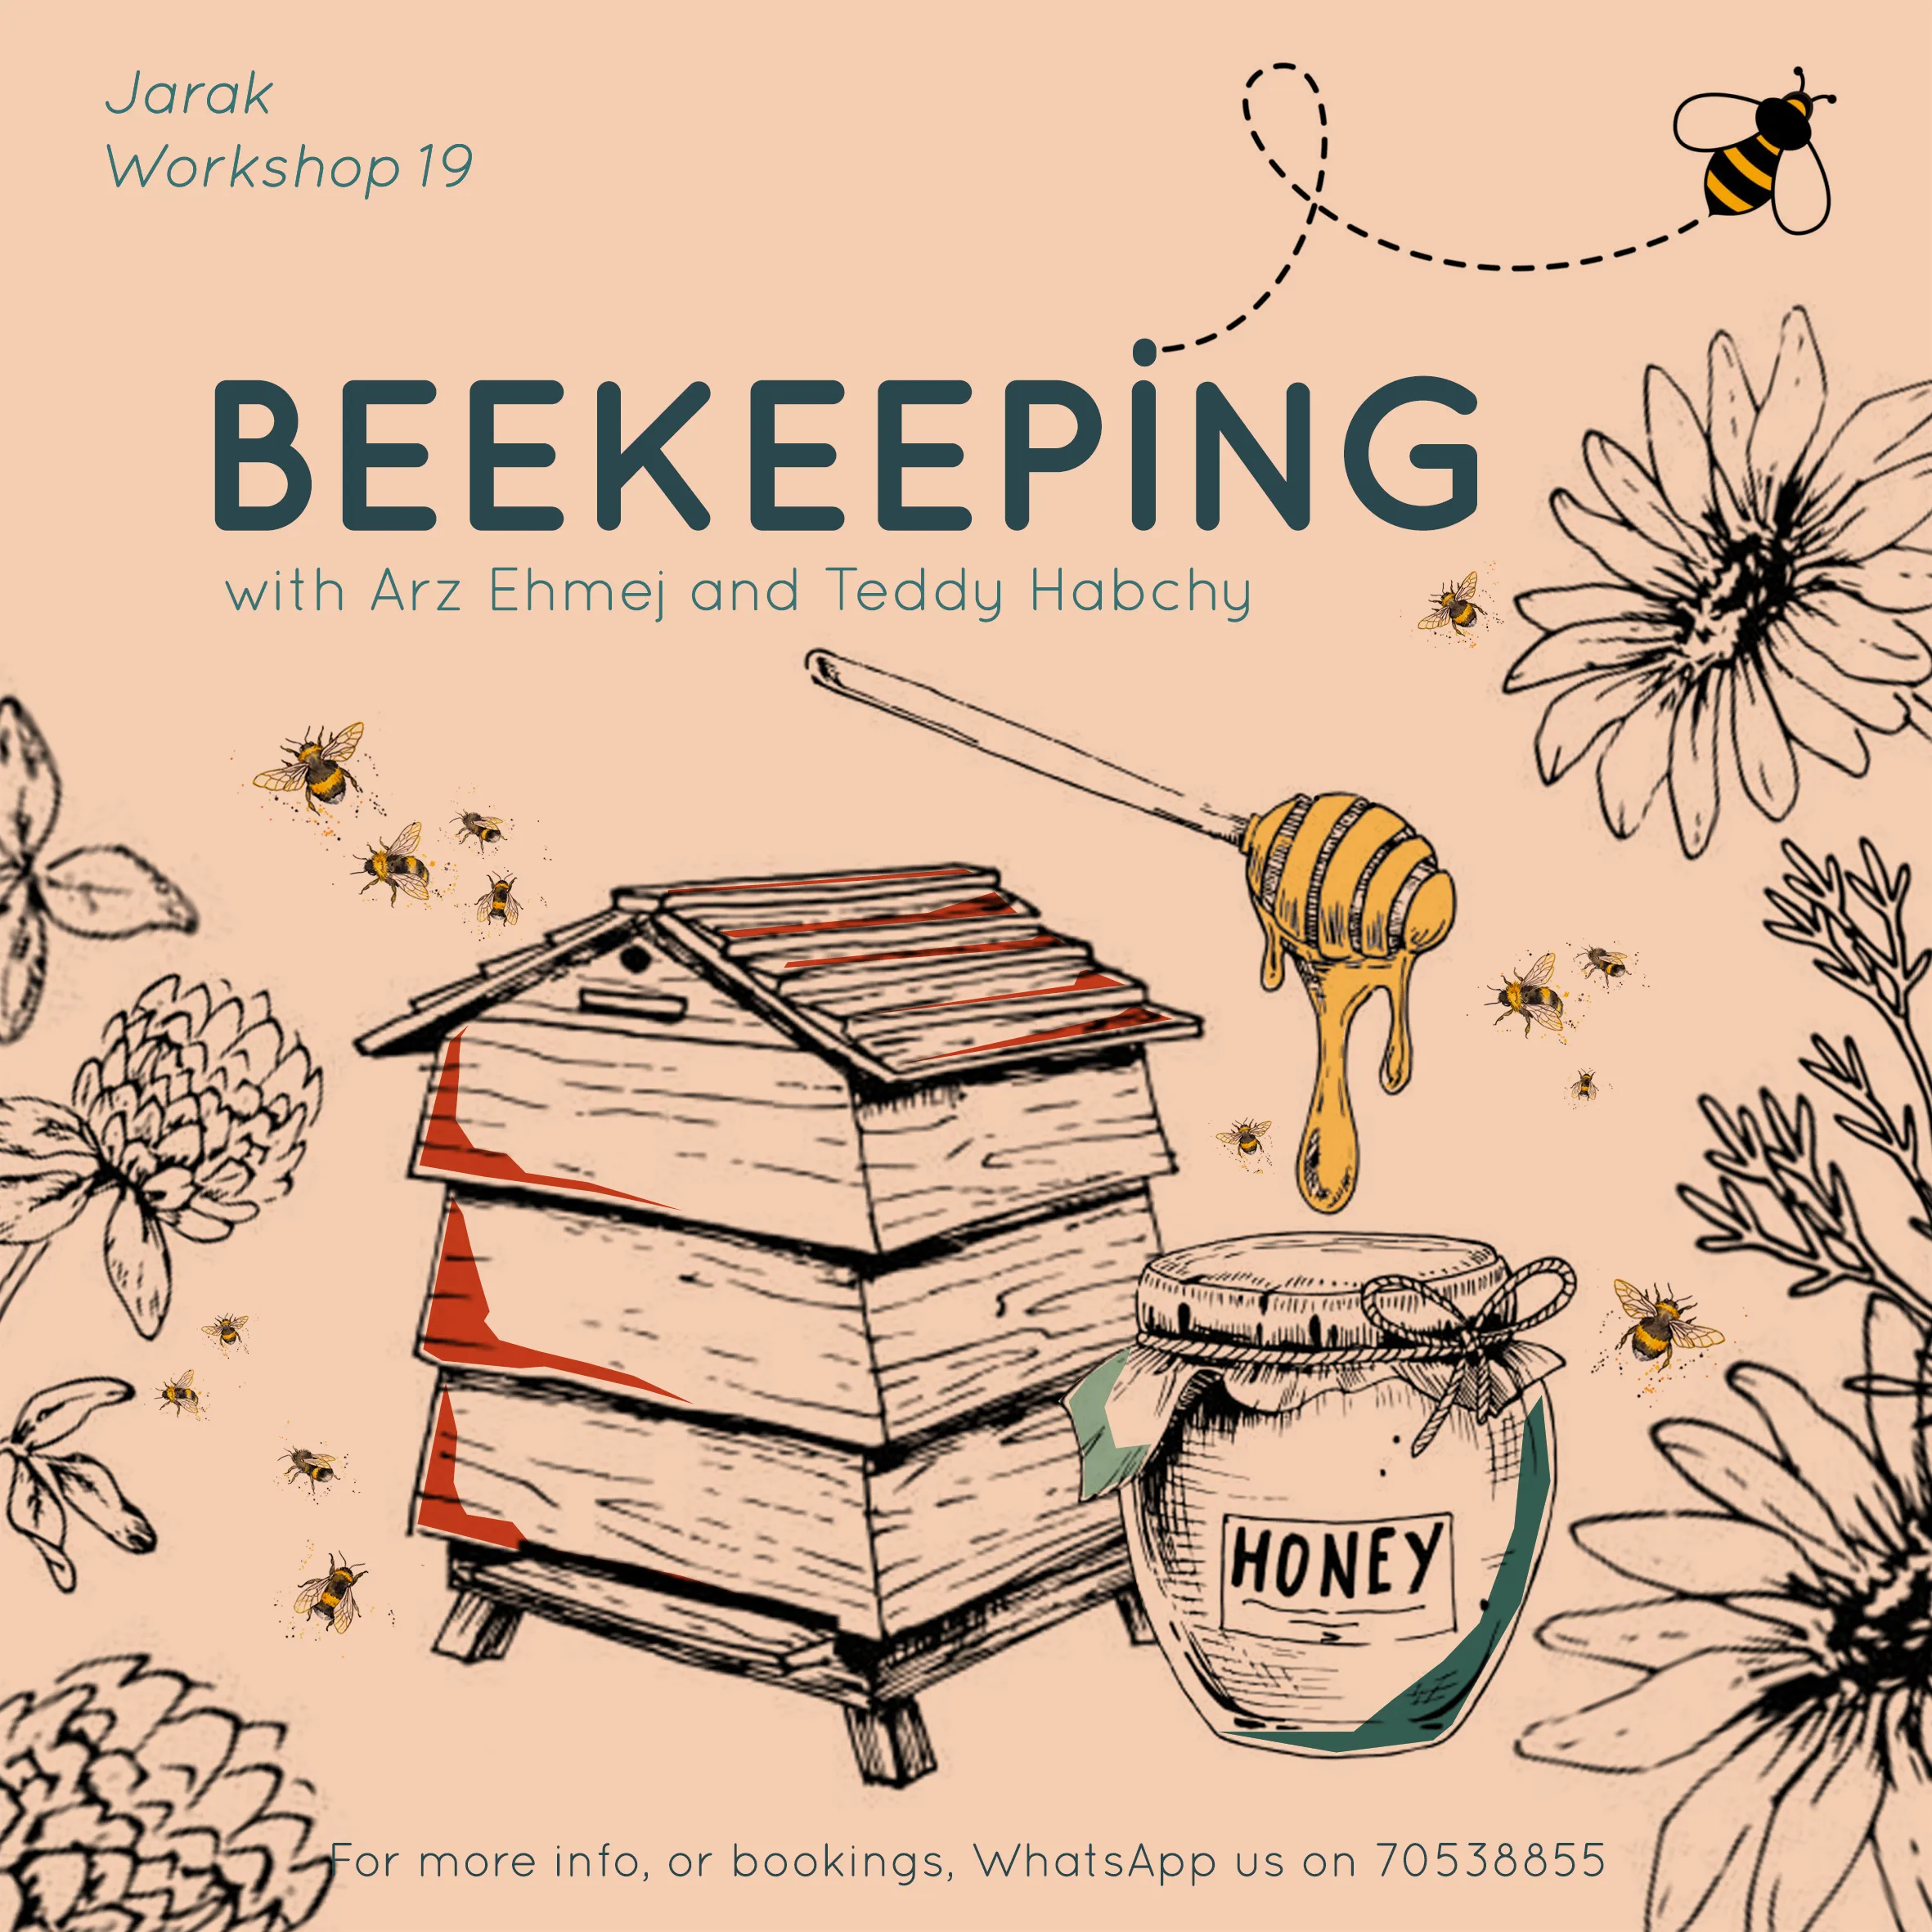 Beekeeping workshop with Jarak